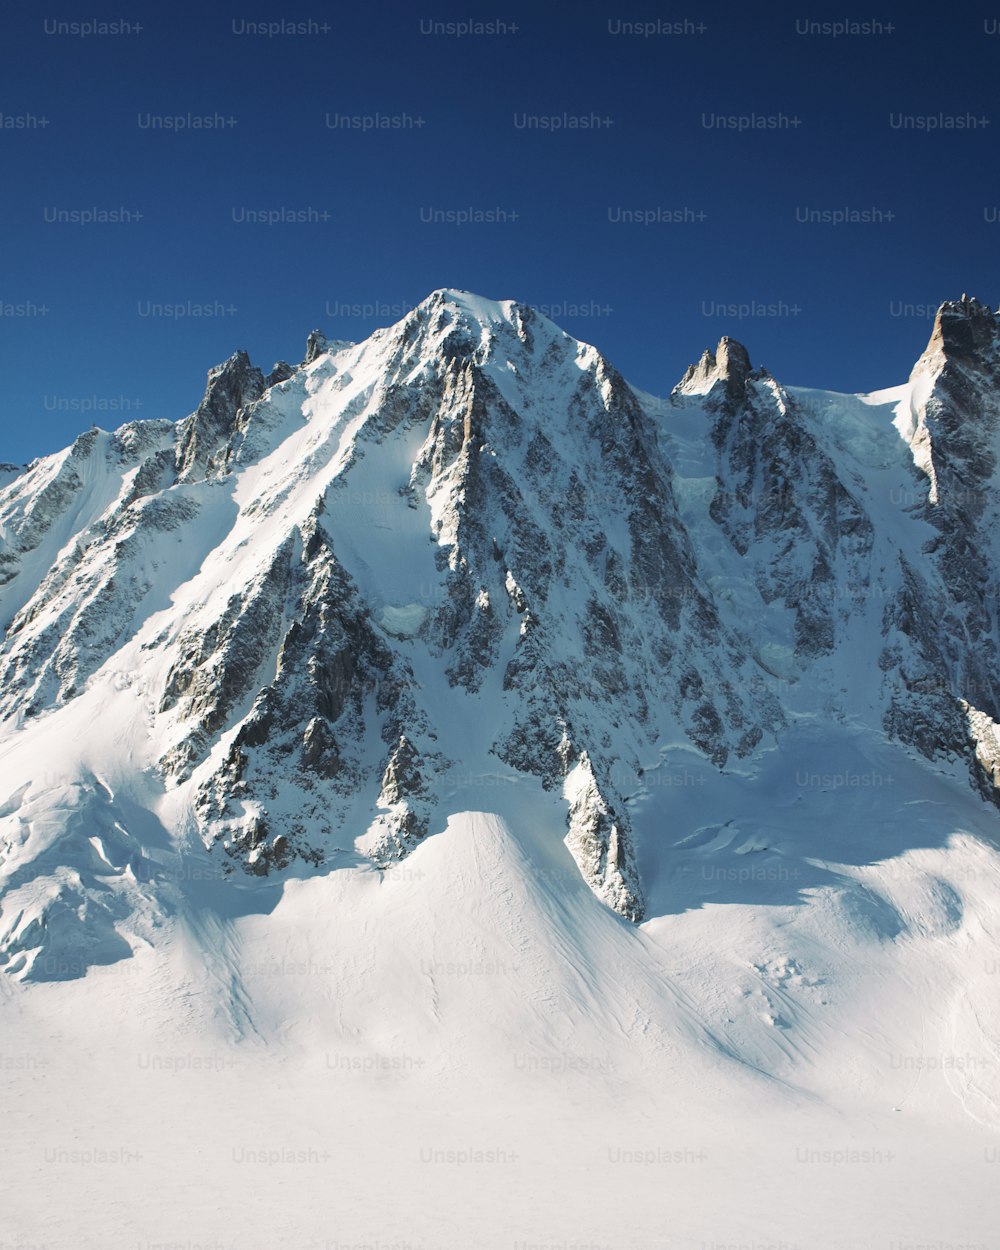 Una grande montagna coperta di neve sotto un cielo blu